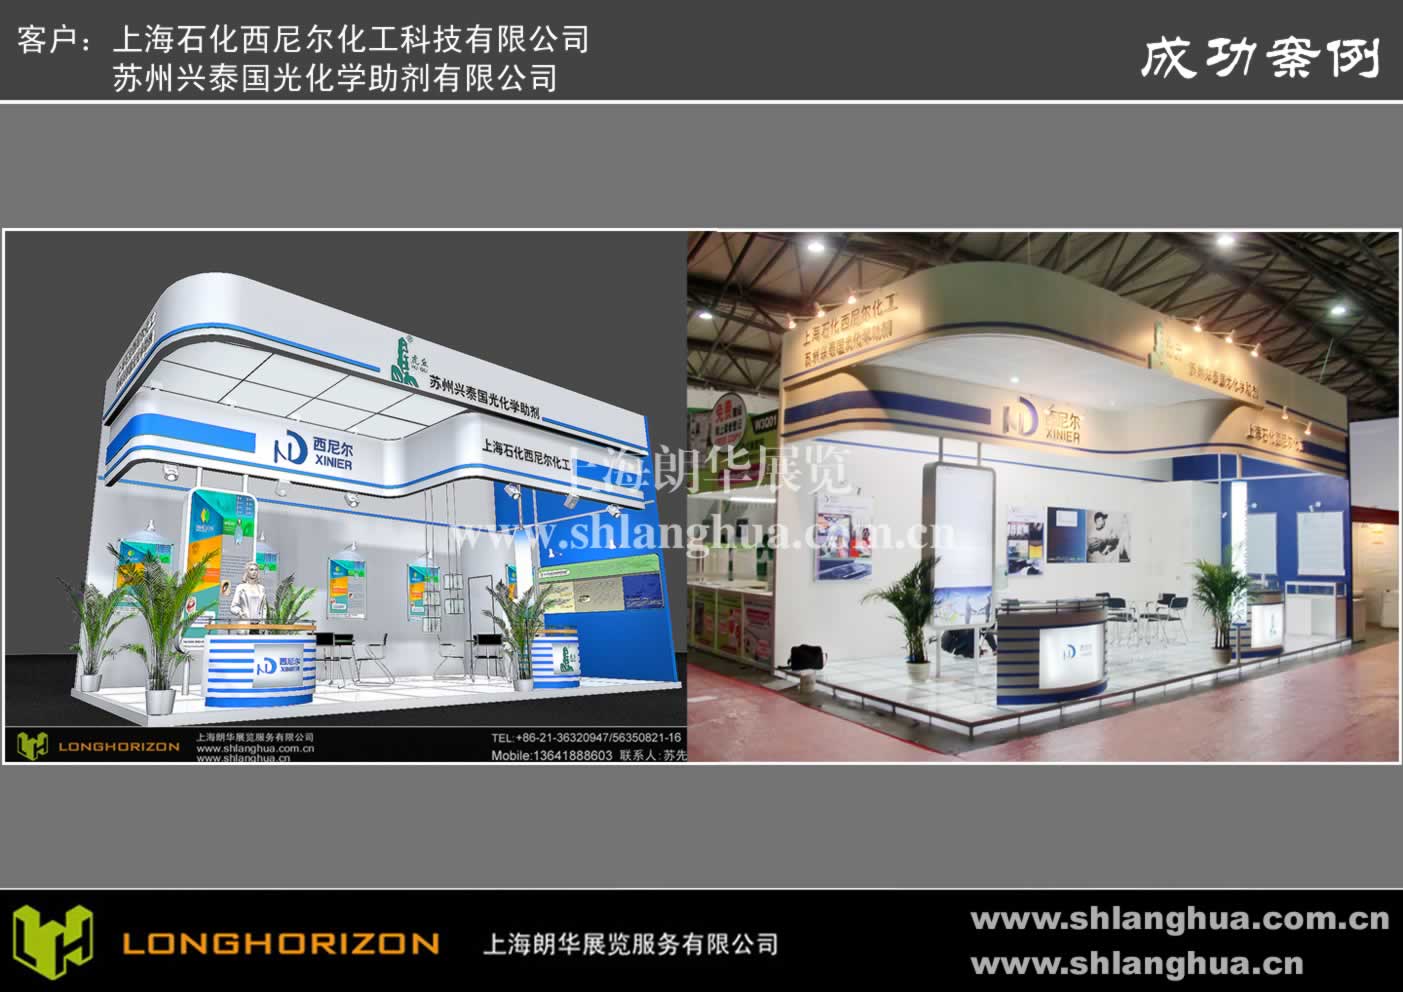 上海石化西尼尔化工科技有限公司 雅式橡塑展